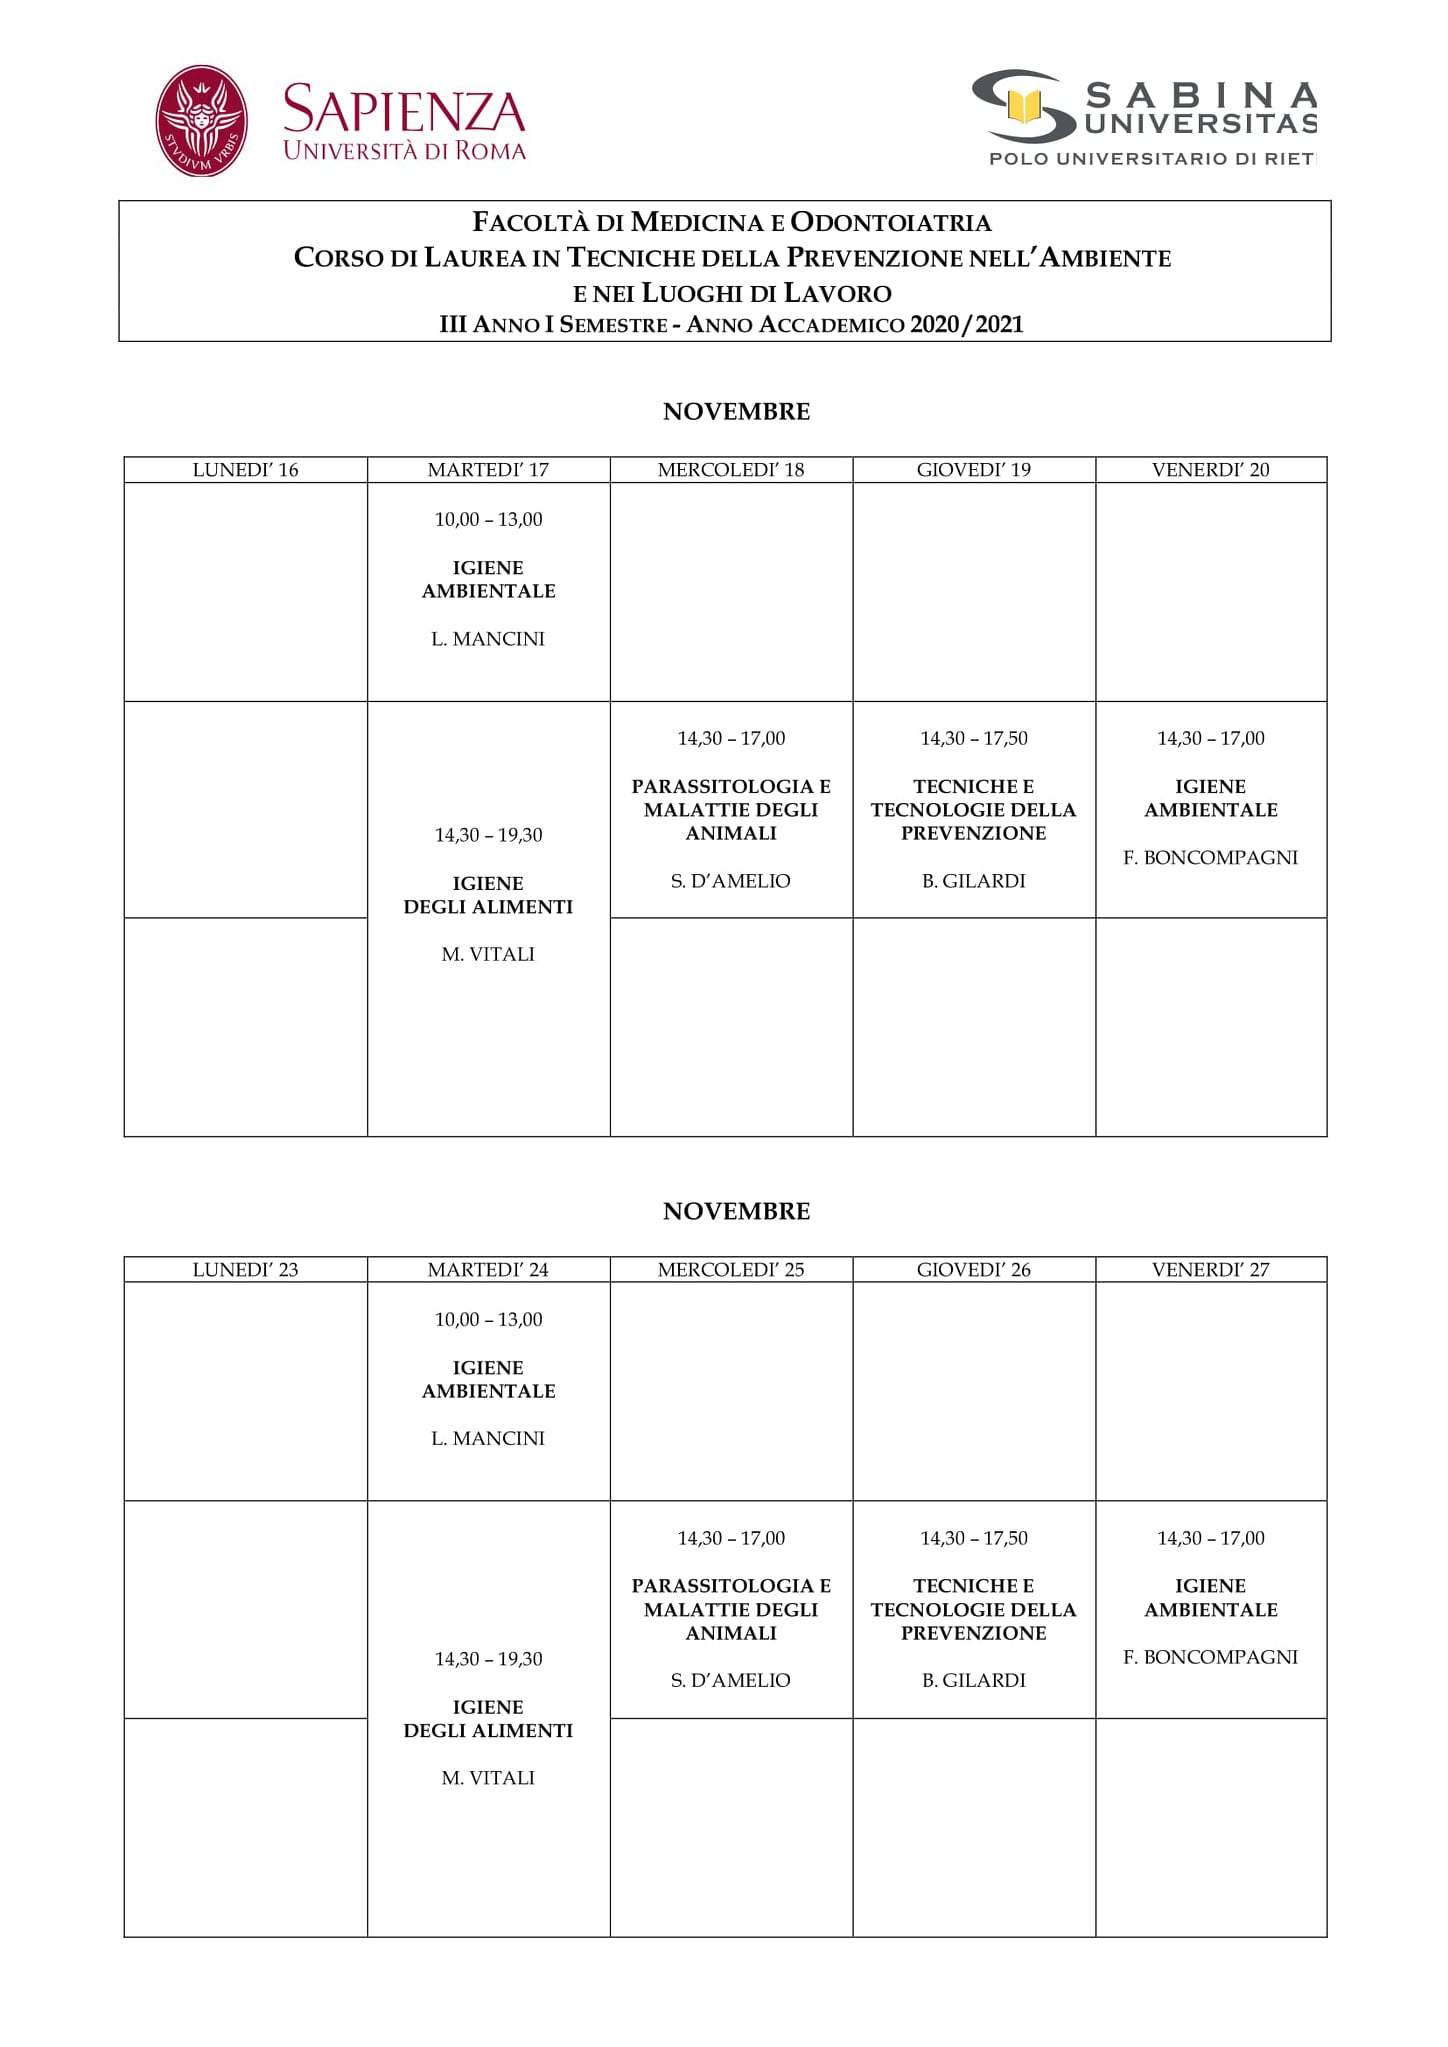 Tecniche della Prevenzione | Aggiornamento calendario lezioni dal 16/11/2020 al 27/11/2020